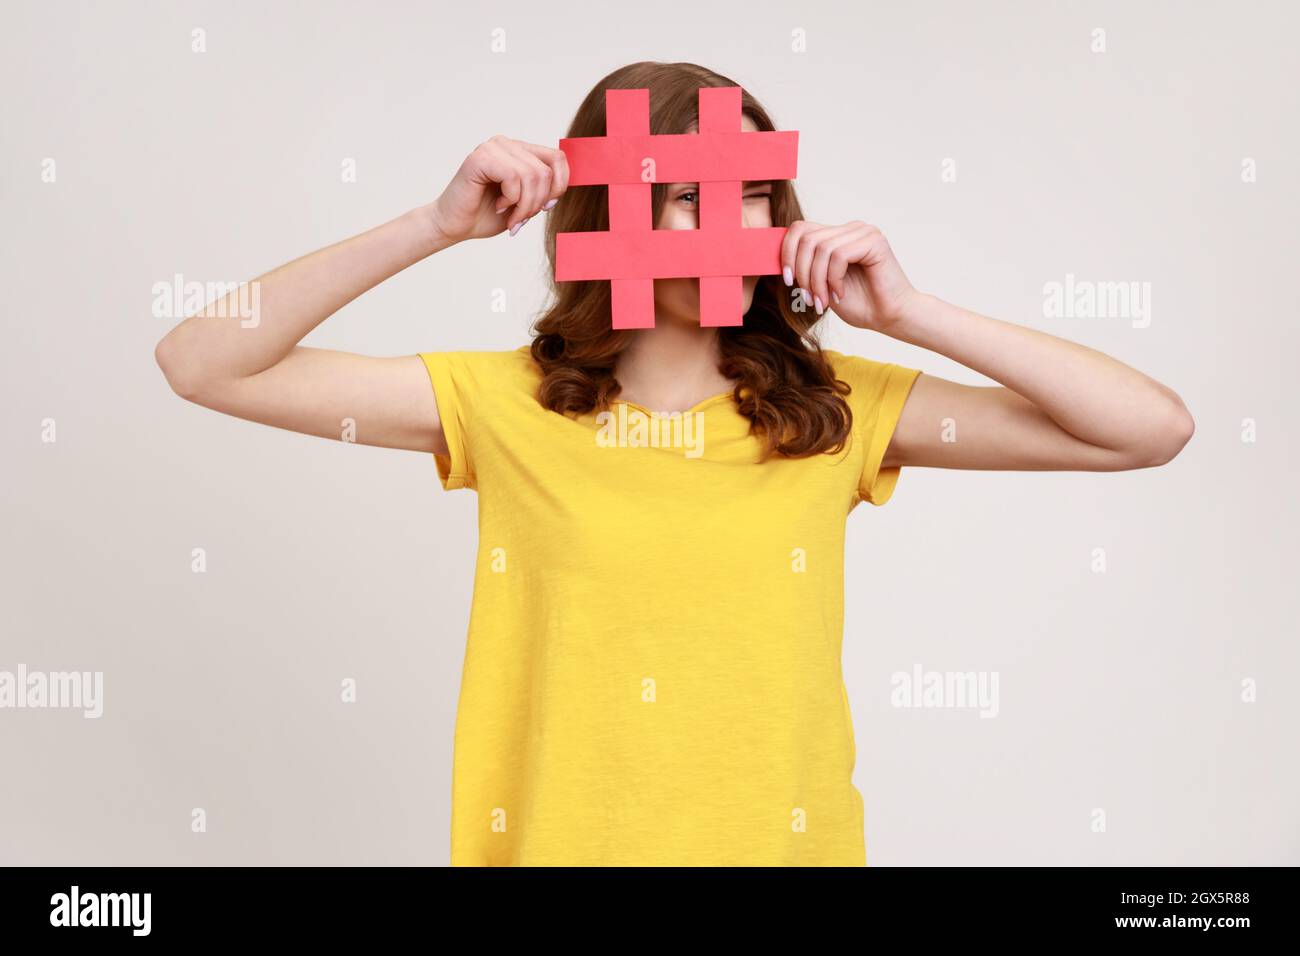 Neugierige, rothaarige Frau im jungen Alter in gelbem T-Shirt, die durch rotes Hashtag-Schild schaut, nach richtigen Beiträgen in sozialen Medien sucht, ausspioniert. Innenaufnahme des Studios isoliert auf grauem Hintergrund. Stockfoto